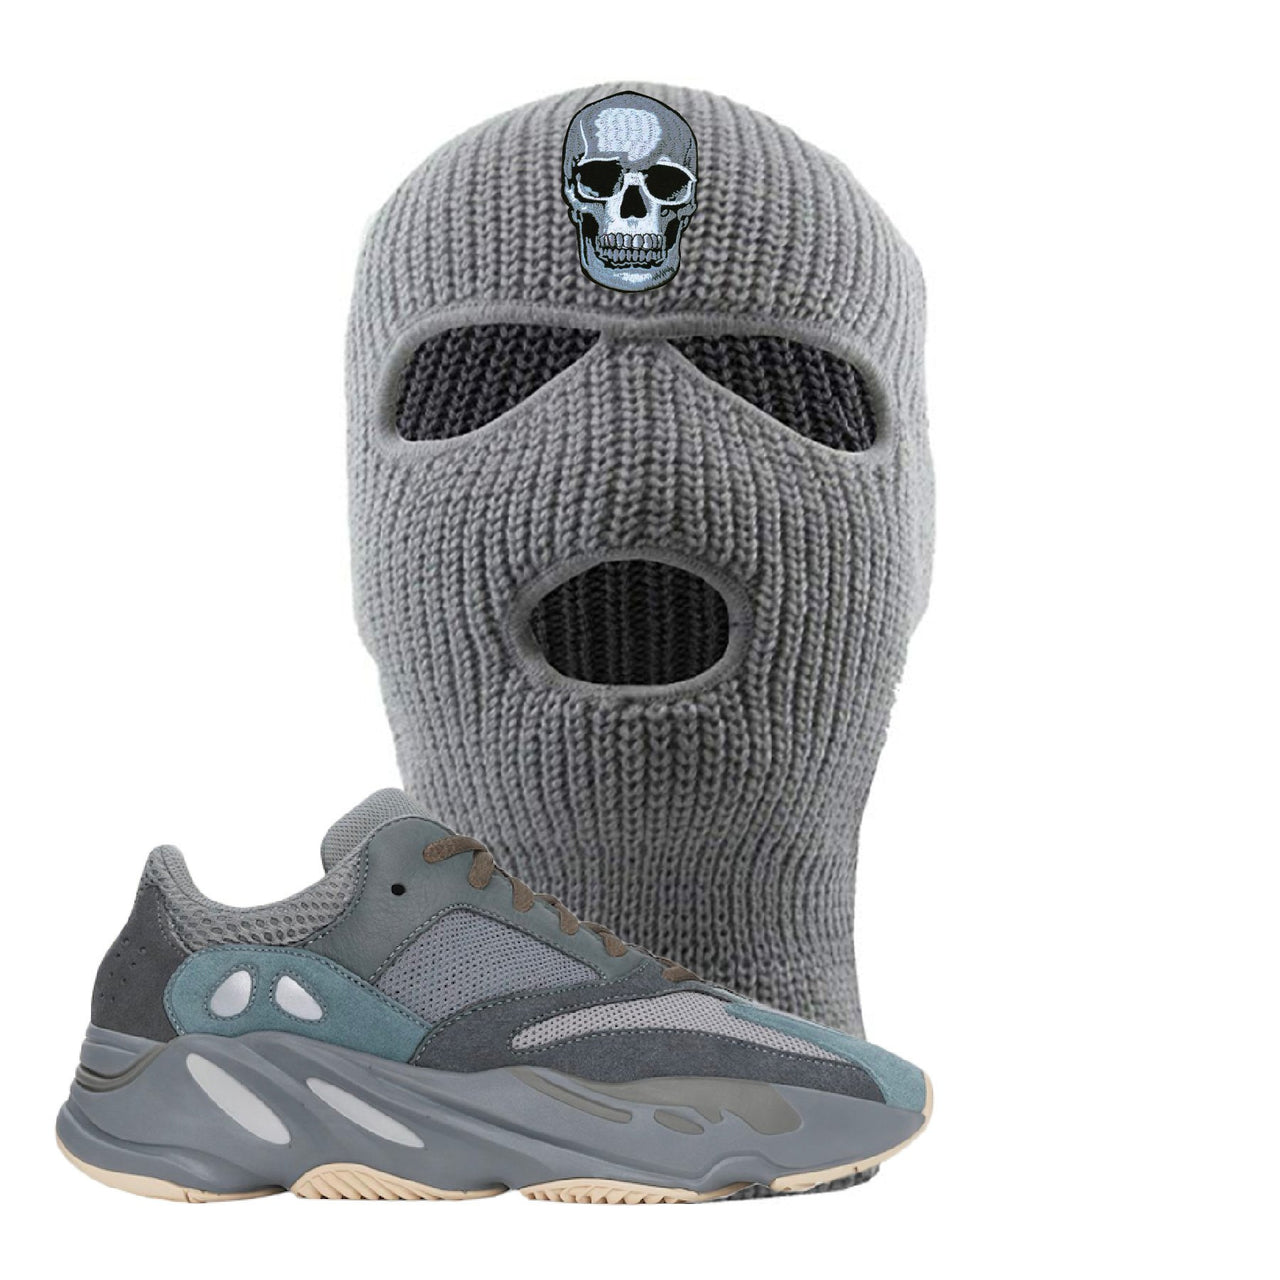 Yeezy Boost 700 Teal Blue Skull Light Gray Sneaker Hook Up Ski Mask